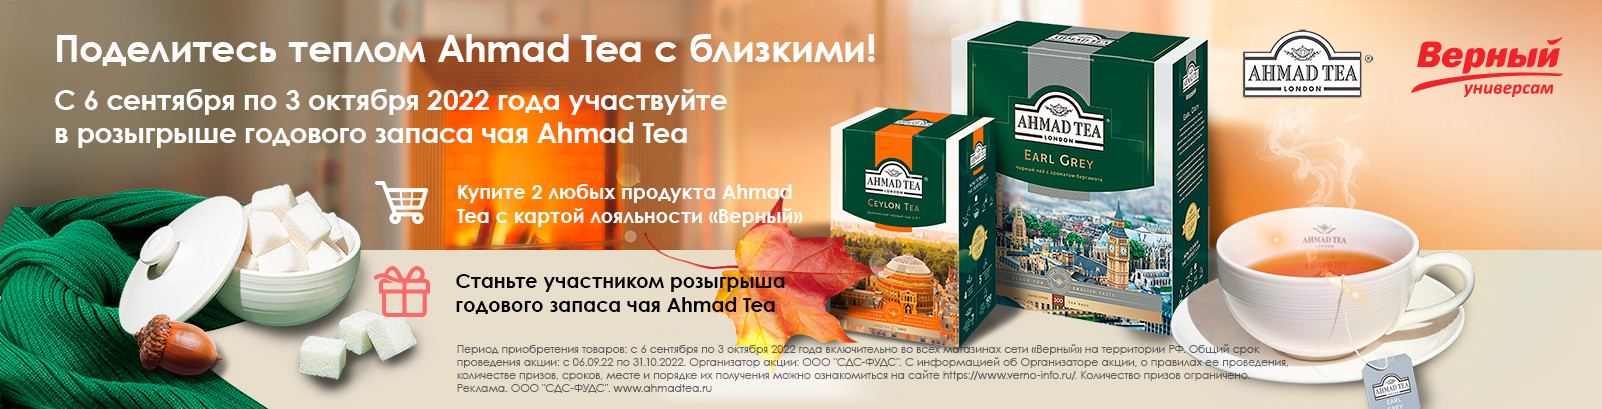 Промо-акция Ахмад чай и Верный: «Поделитесь теплом Ахмад чай с близкими»